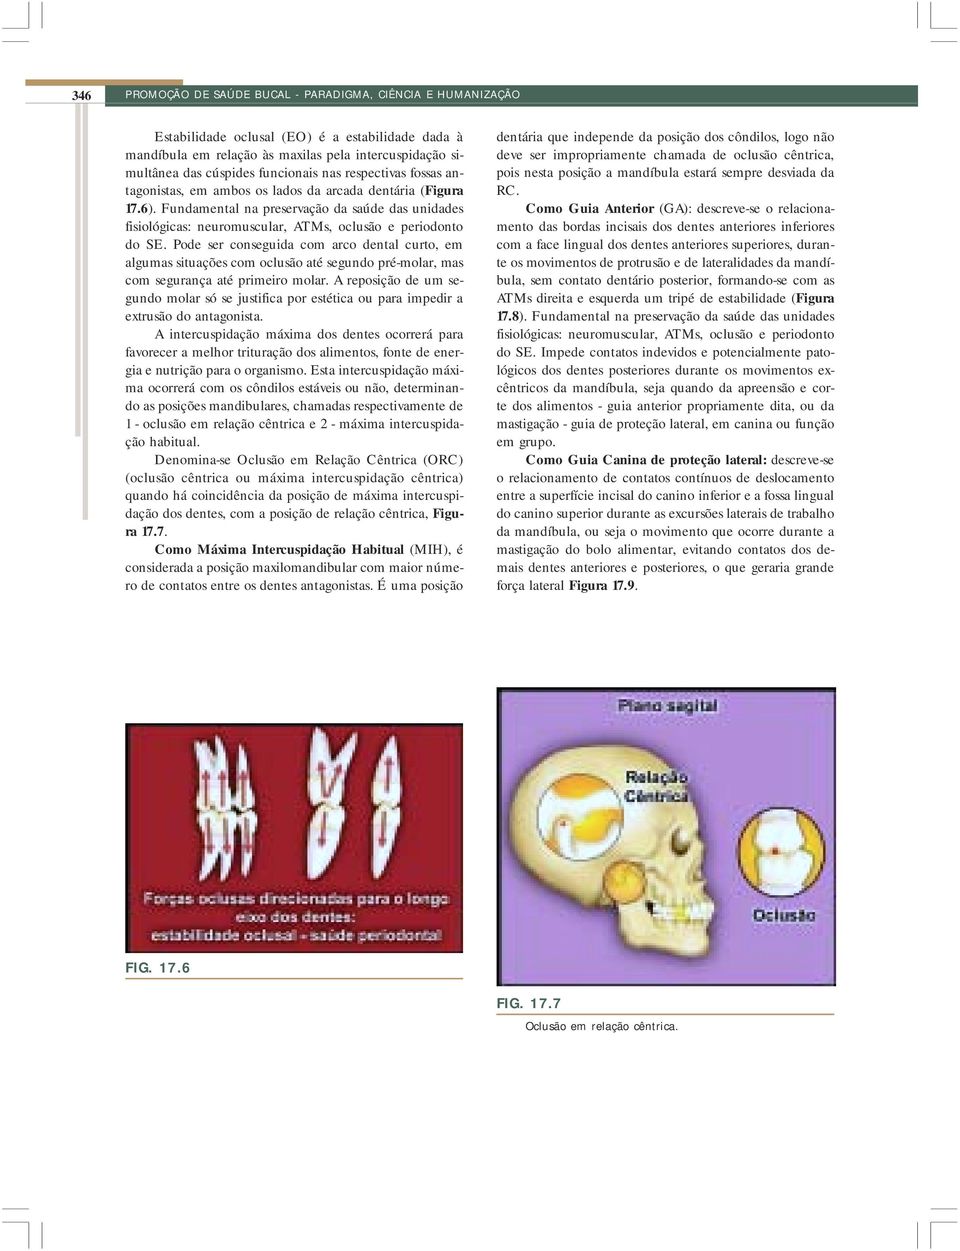 Fundamental na preservação da saúde das unidades fisiológicas: neuromuscular, ATMs, oclusão e periodonto do SE.